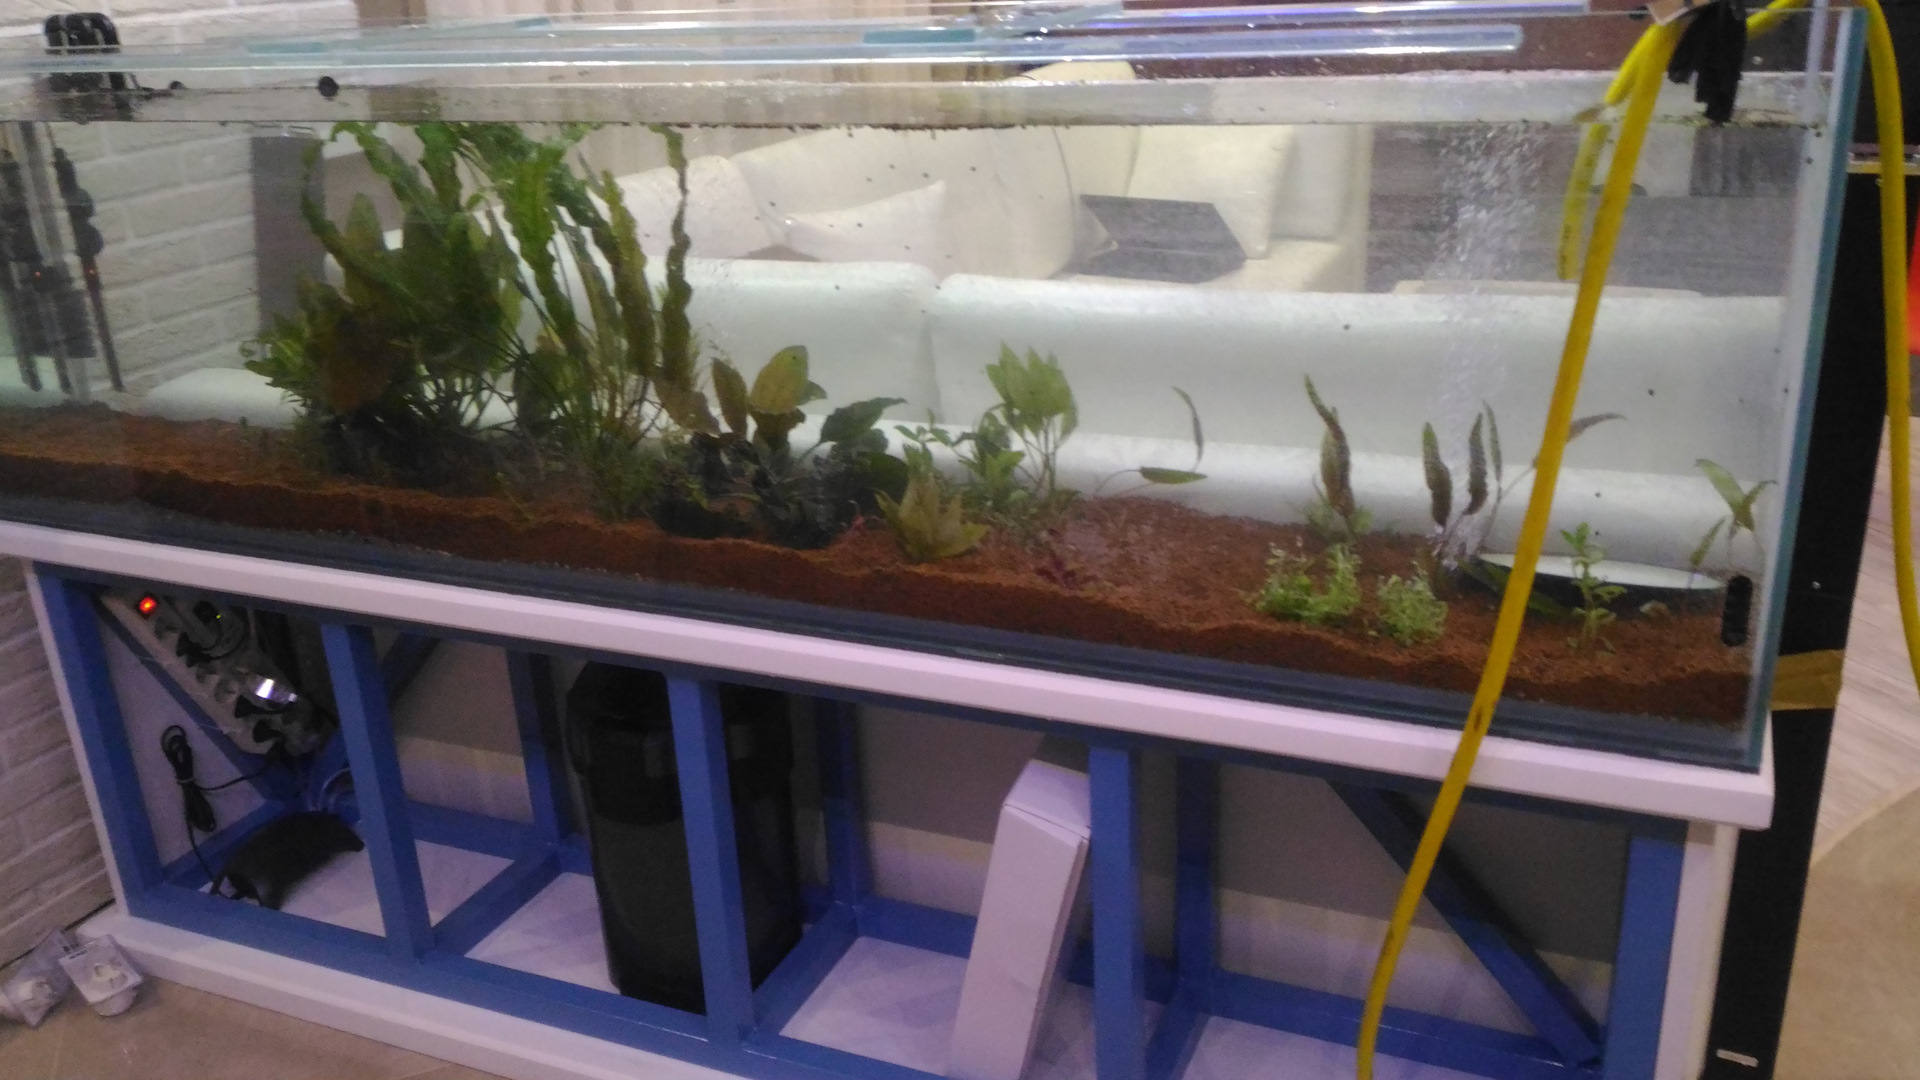 Запуск аквариума: запуск аквариума с нуля пошаговая инструкция, как запустить аквариум в первый раз, как правильно